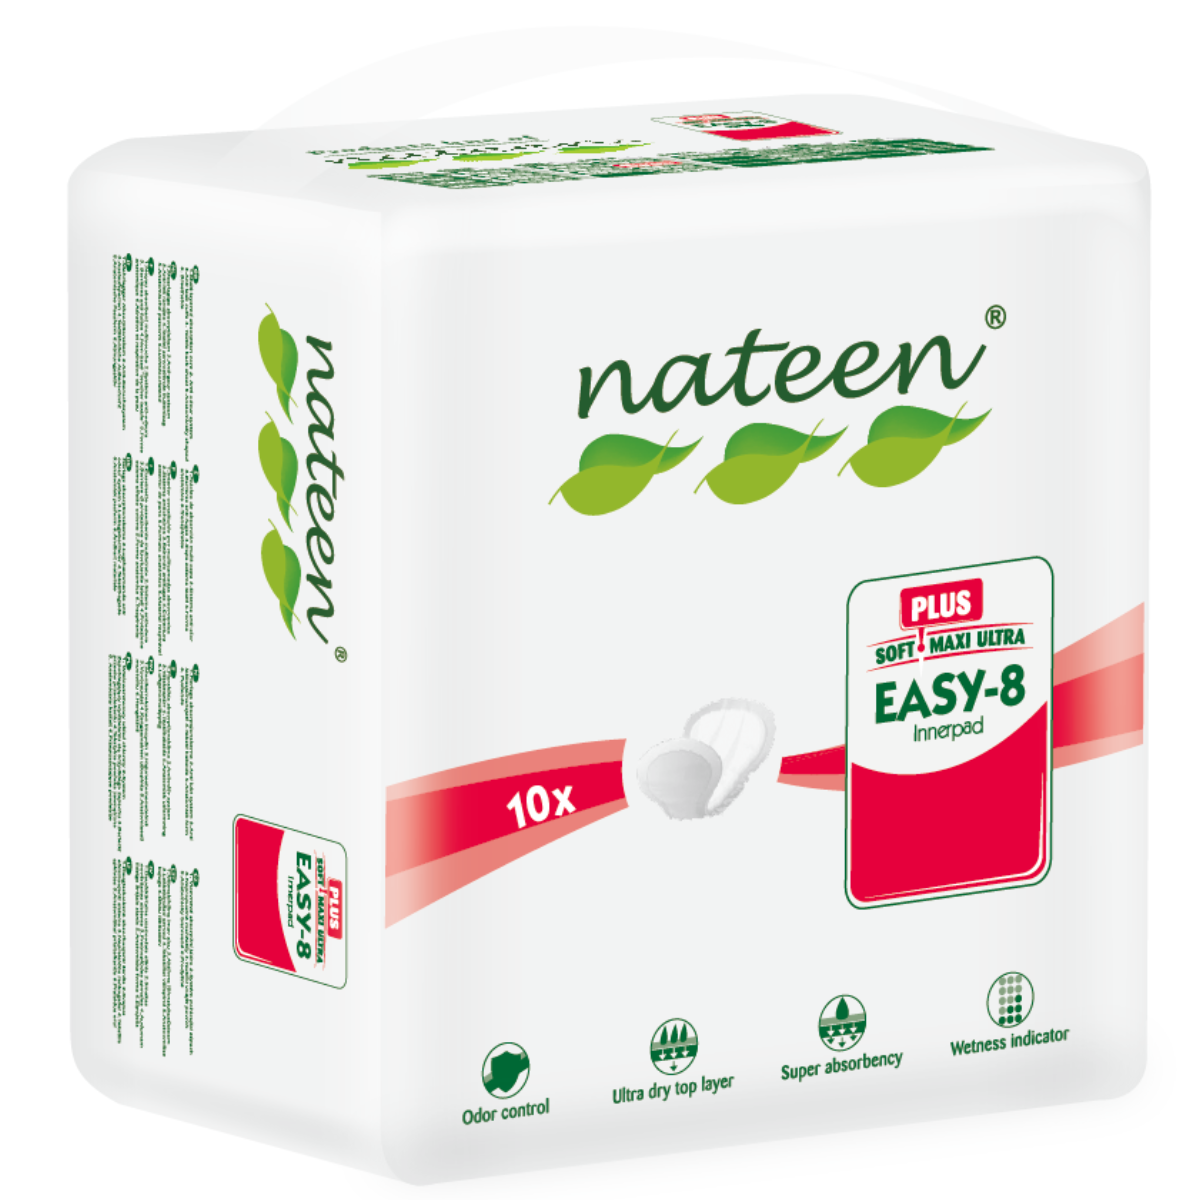 SAMPLE | Nateen Easy-8 unisex pads range